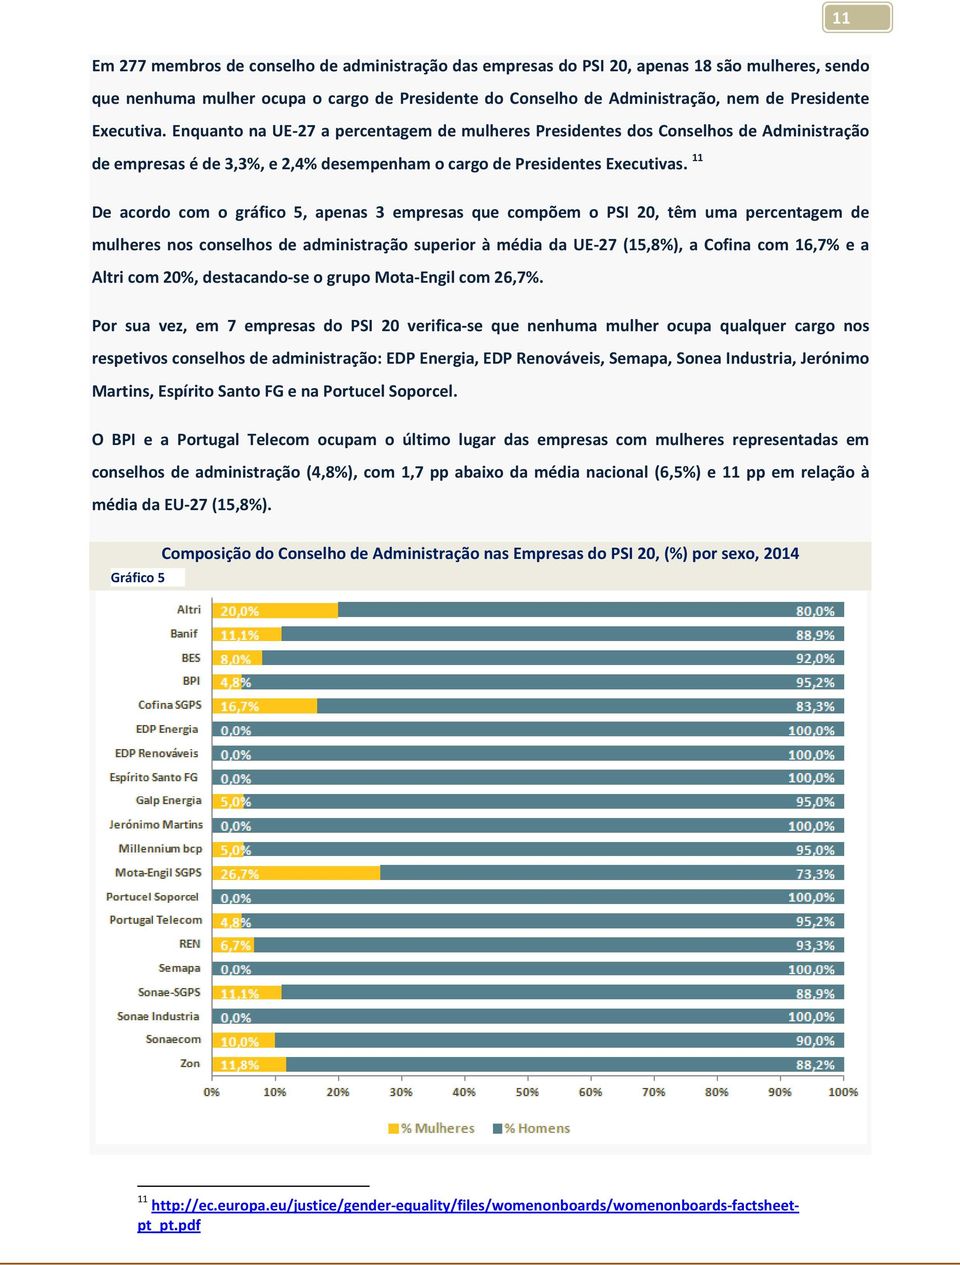 11 De acordo com o gráfico 5, apenas 3 empresas que compõem o PSI 20, têm uma percentagem de mulheres nos conselhos de administração superior à média da UE-27 (15,8%), a Cofina com 16,7% e a Altri